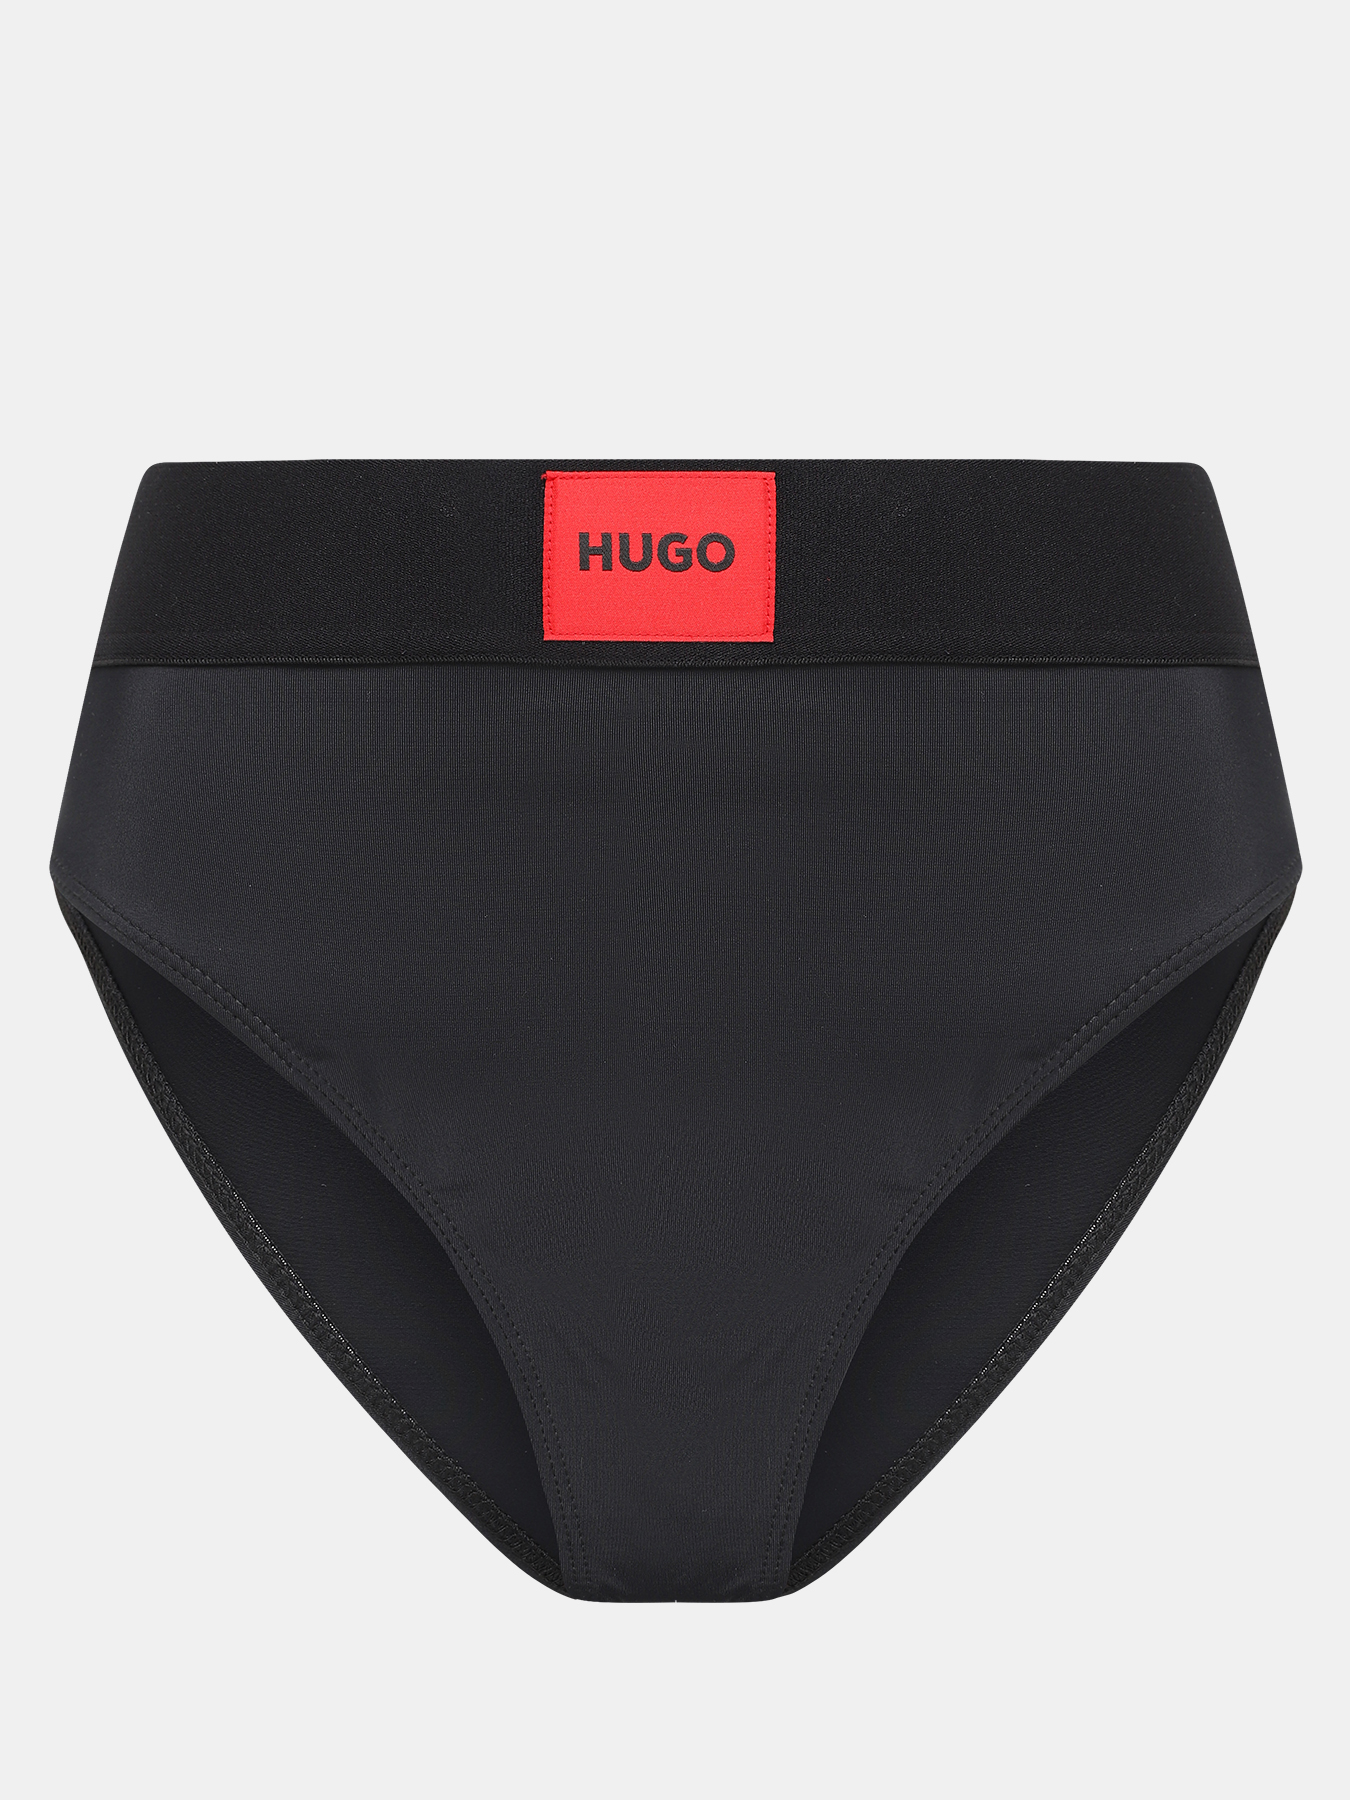 Плавки купальные High waist red label HUGO 418299-044, цвет черный, размер 46-48 - фото 1